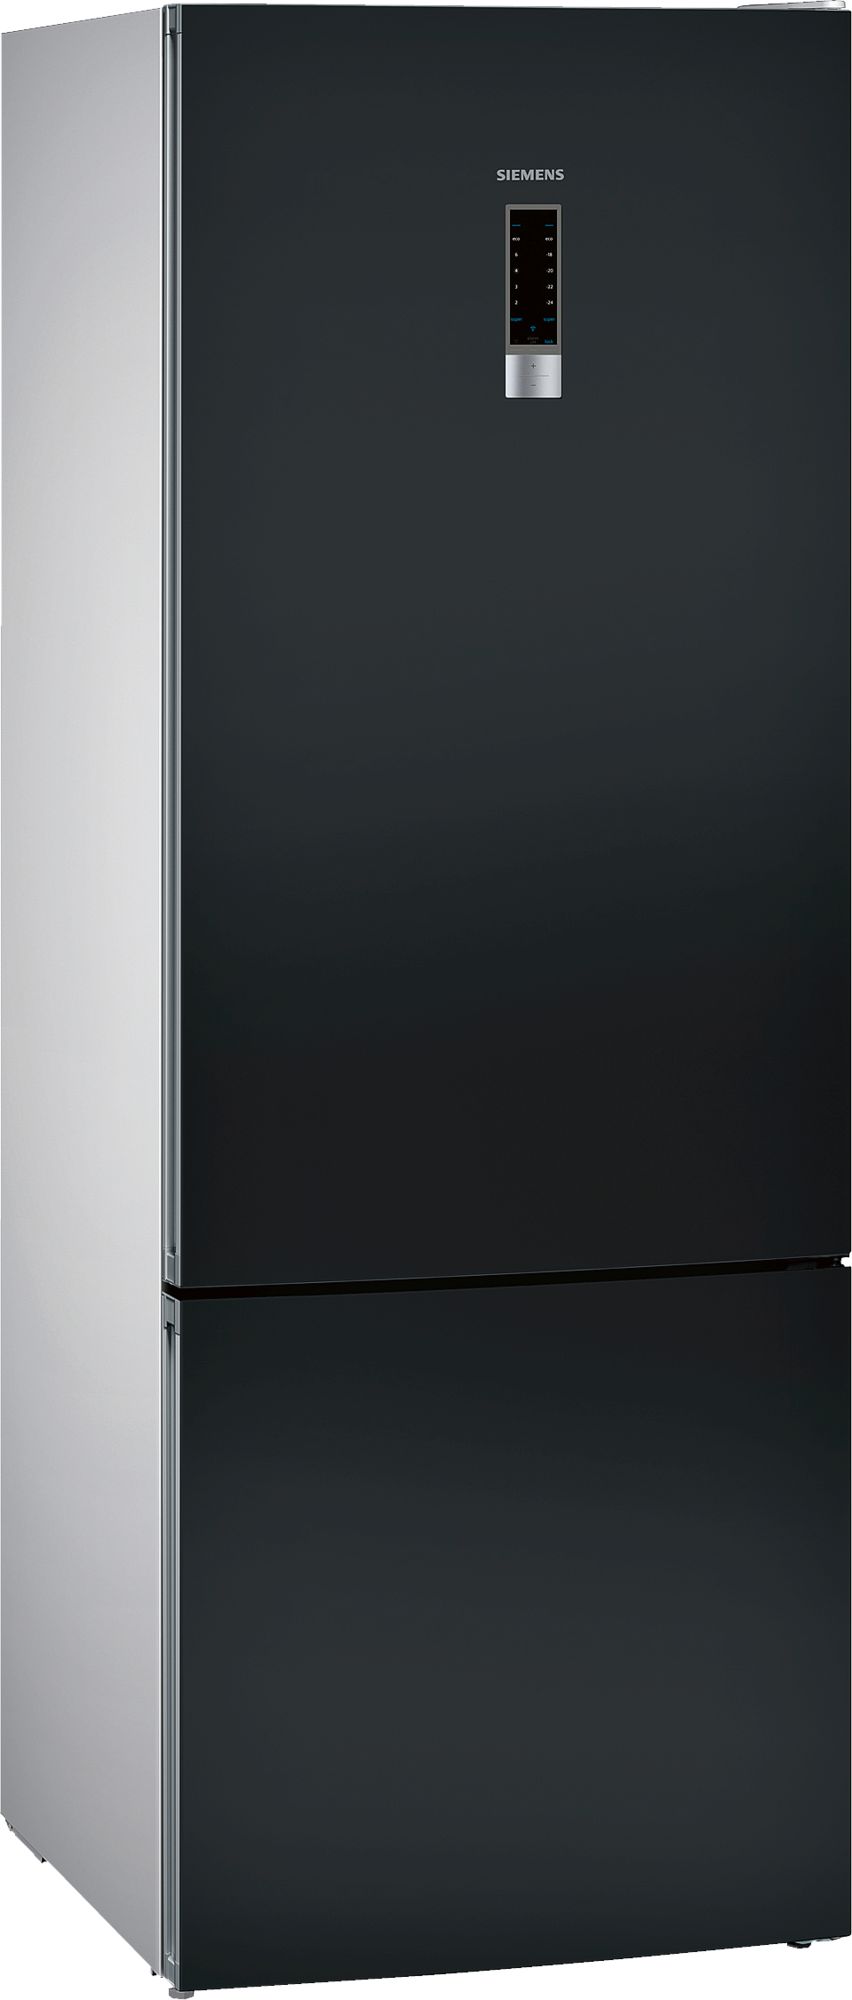 iQ300 Alttan Donduruculu Buzdolabı 70 cm, Kolay temizlenebilir siyah inoks